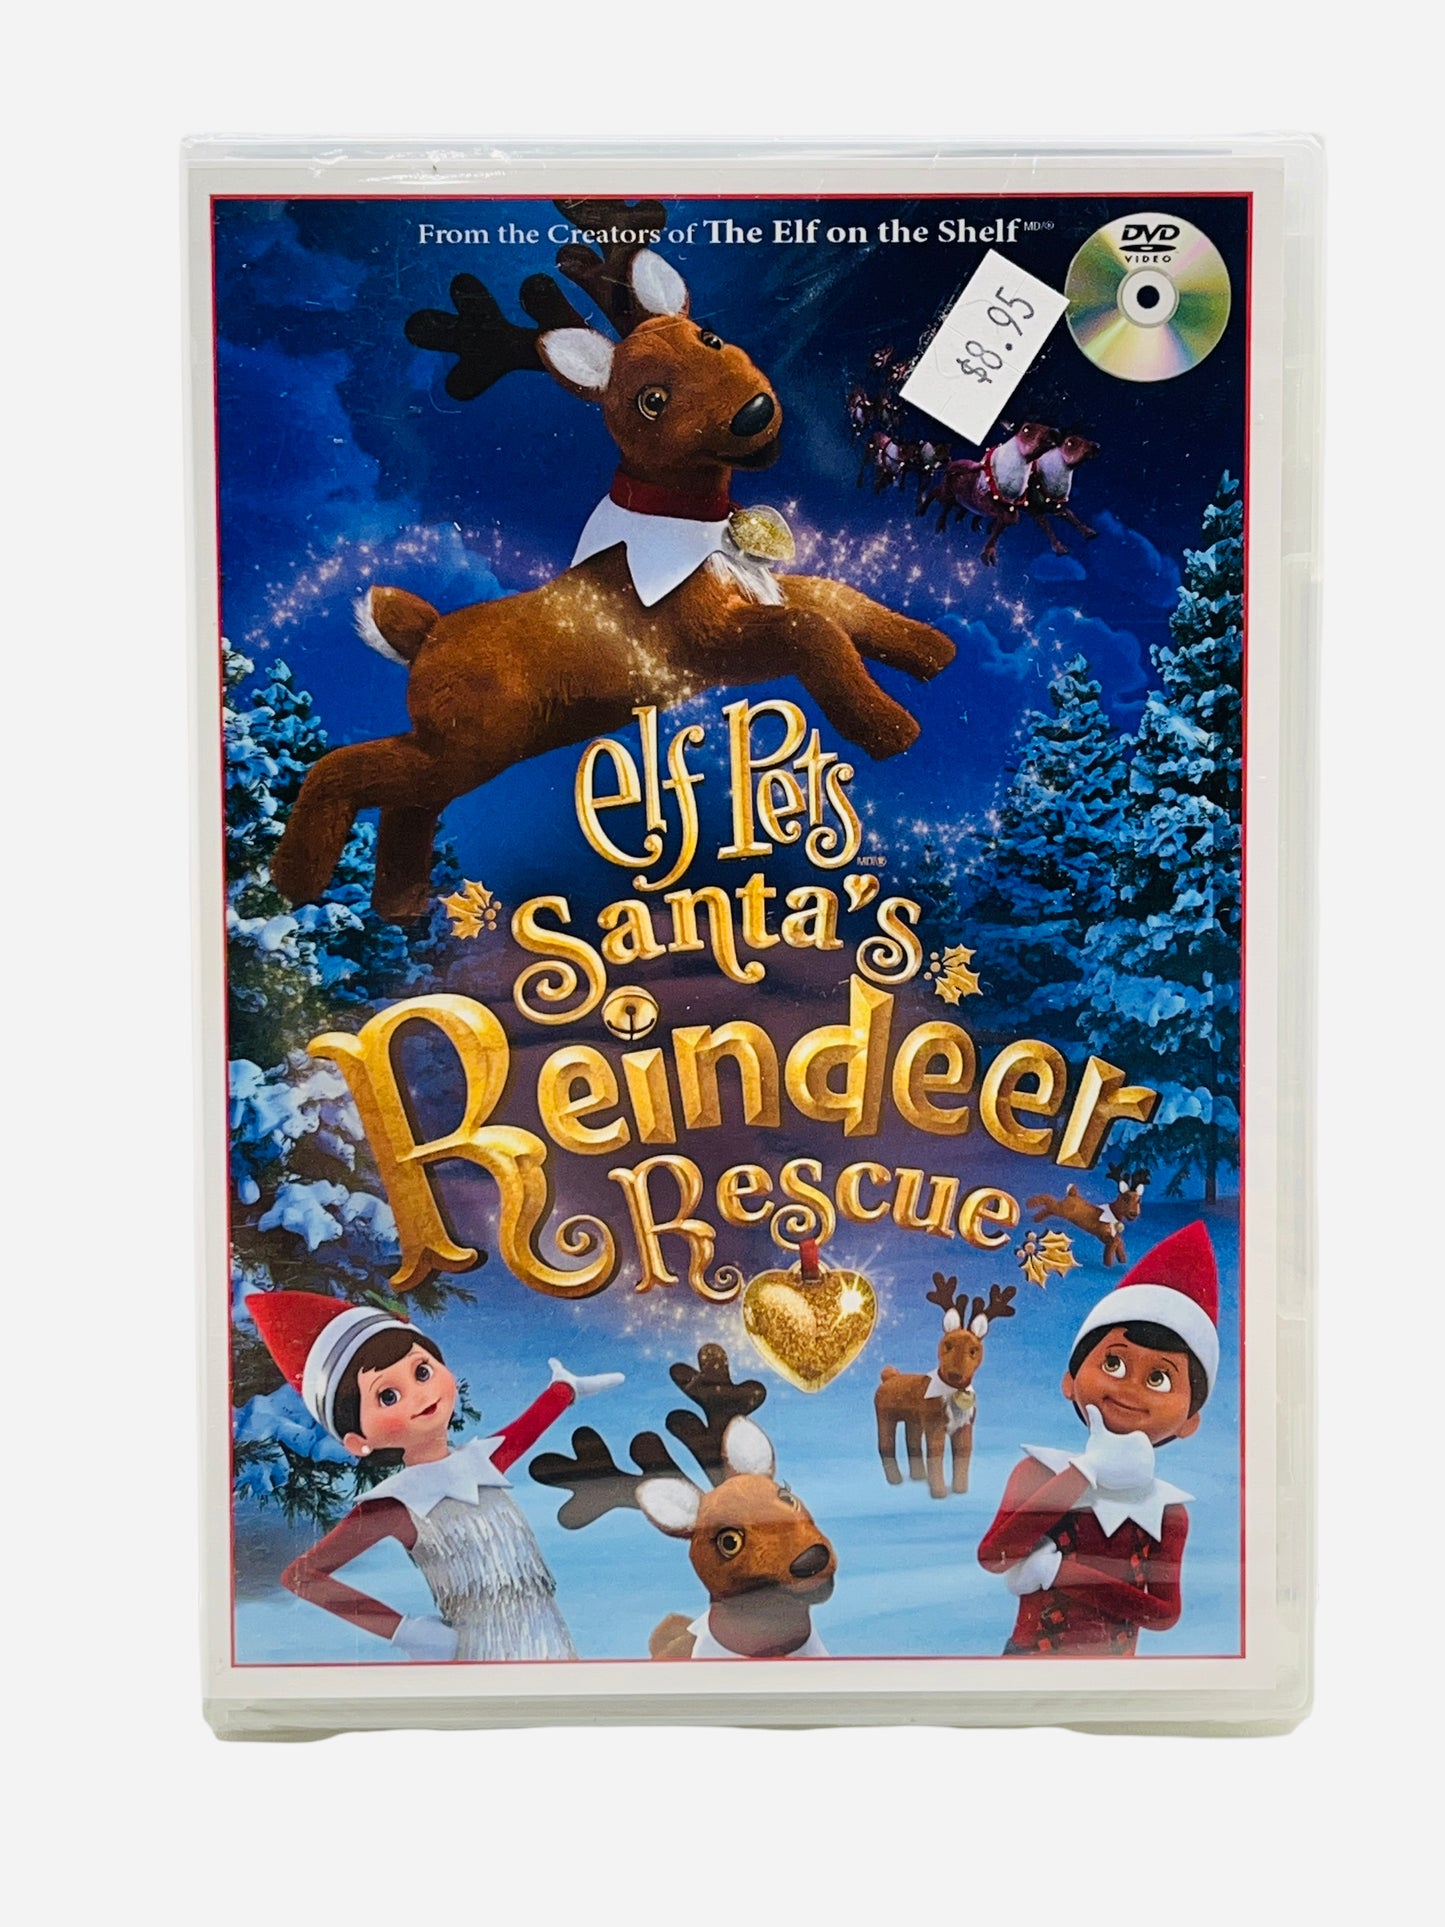 Elf Pets Santa's Reindeer Rescue Dvd